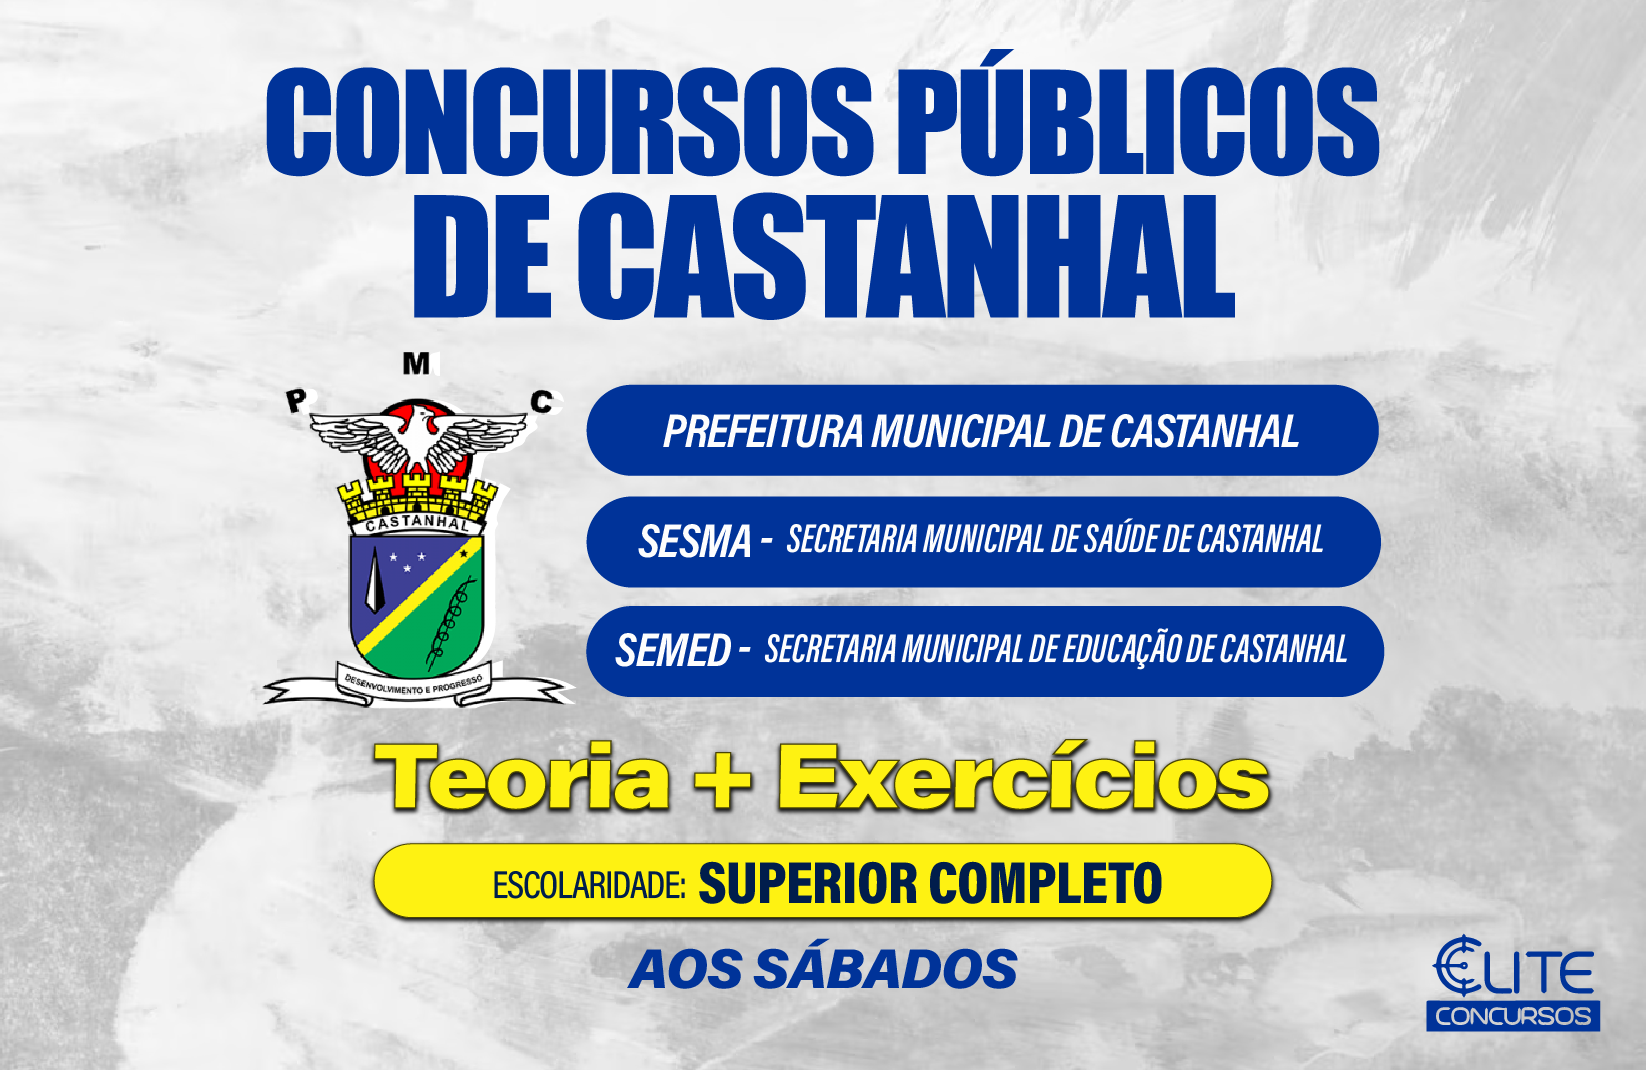 Prefeitura Municipal de Castanhal - PMC, SESMA E SEMED - Superior Completo - 06/04